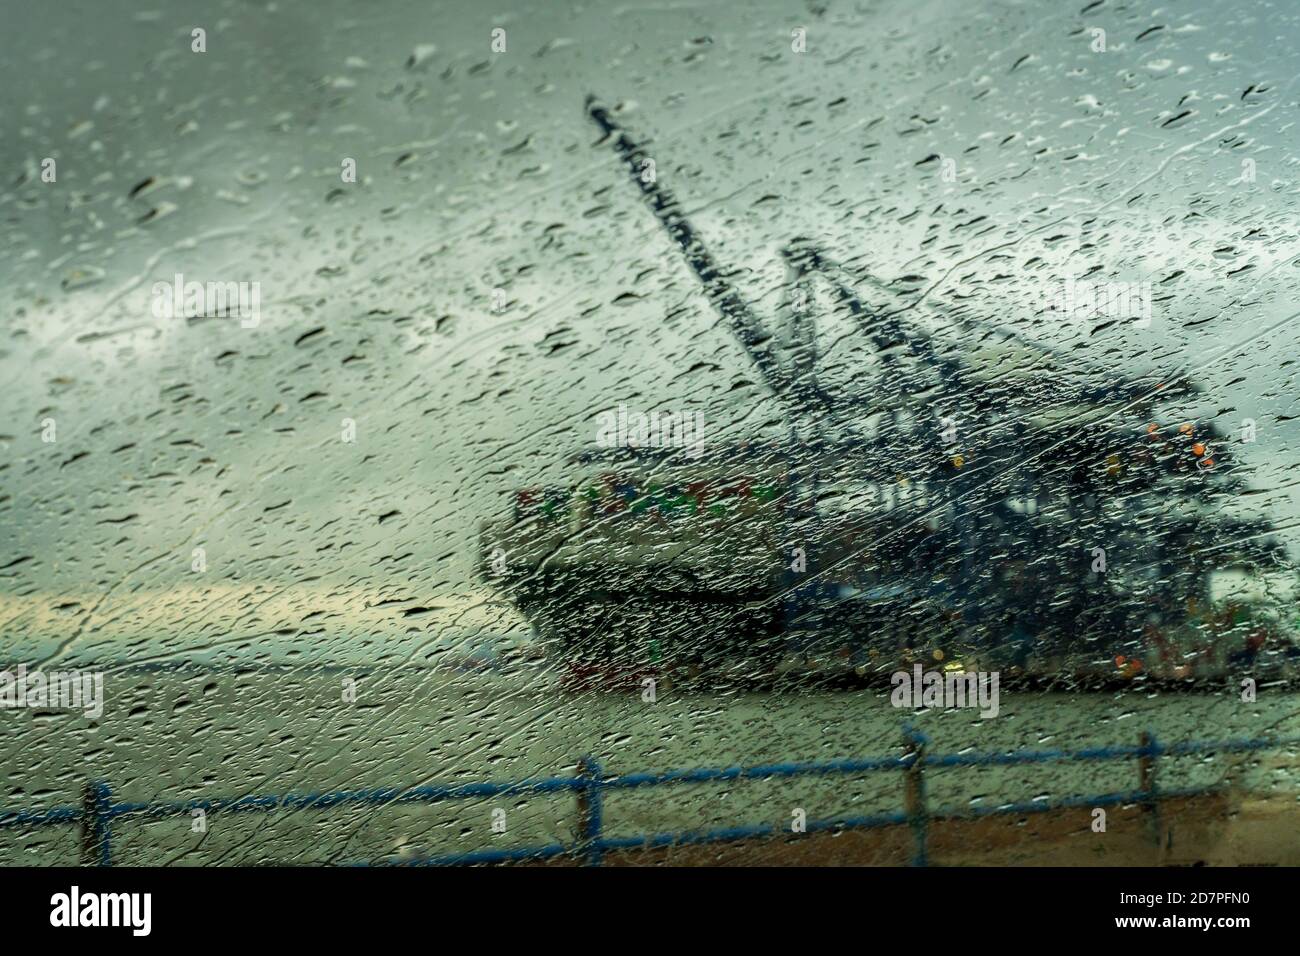 Qualsiasi porto in tempesta - UNA nave container viene scaricata durante una tempesta al porto di Felixstowe, il più grande porto di container del Regno Unito. Negoziati commerciali tempestosi. Foto Stock